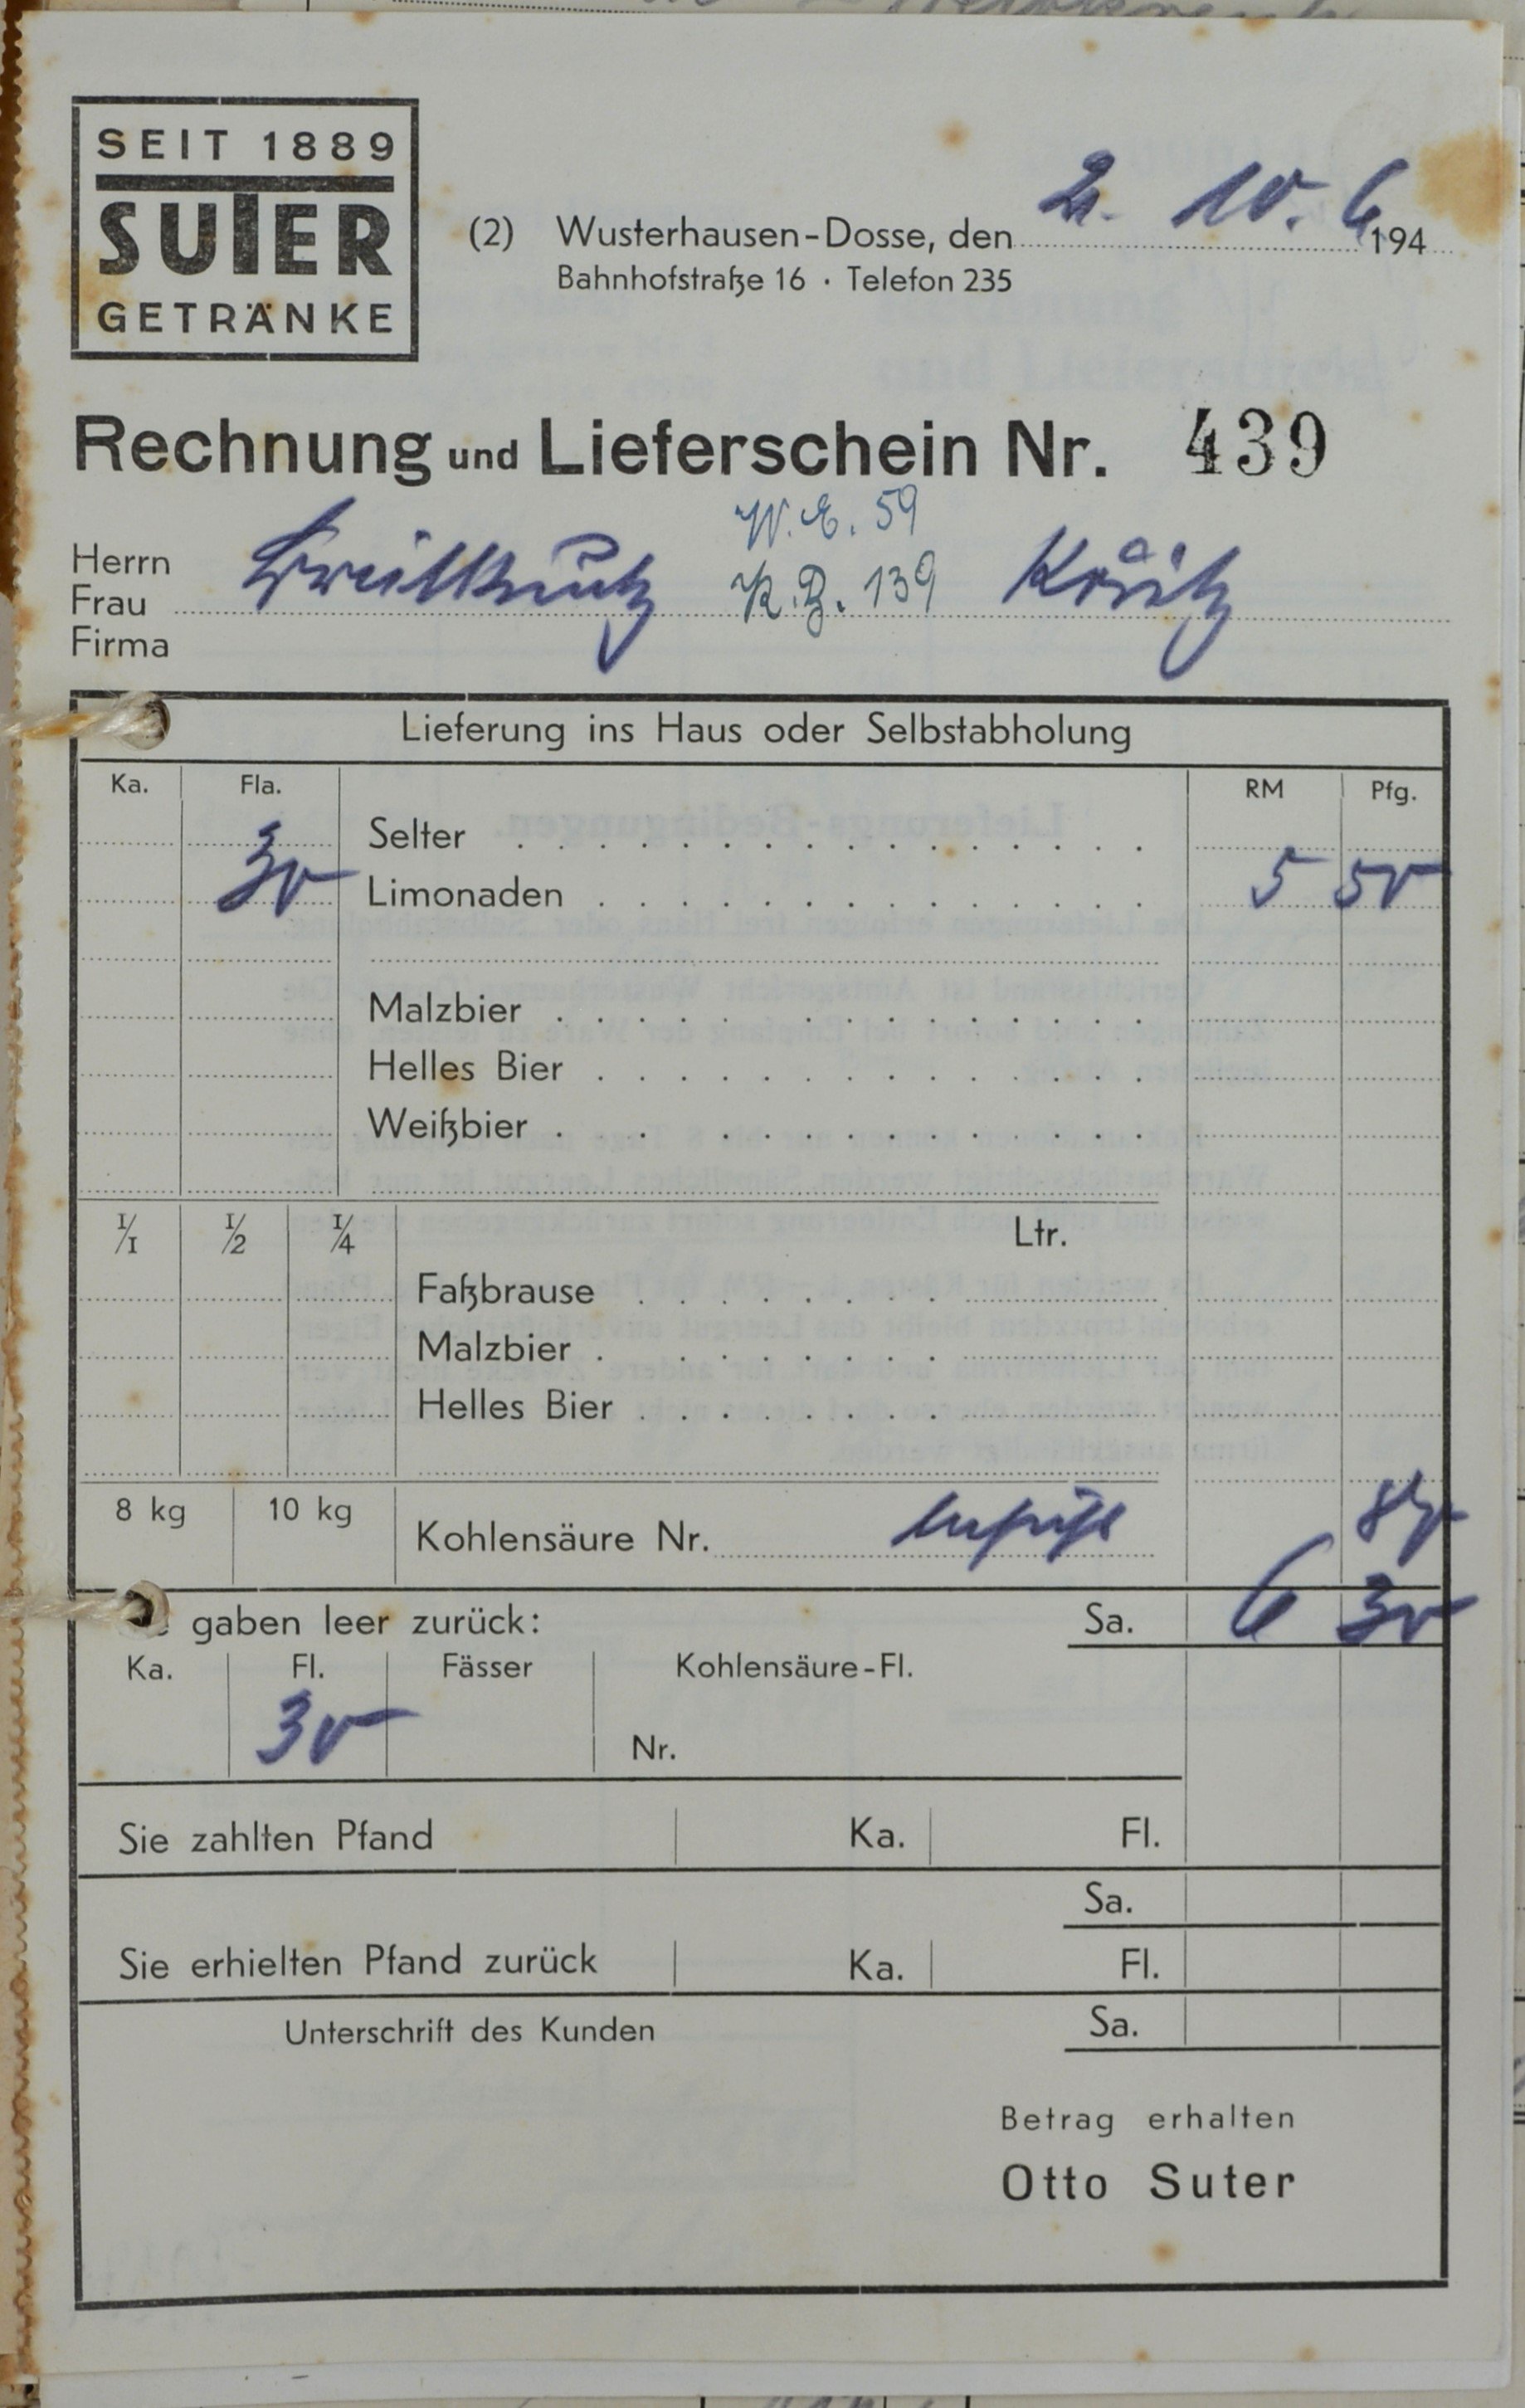 Rechnung von Otto Suter-Suter Getränke aus Wusterhausen (Dosse) für Wilhelm Breitkreuz (DDR Geschichtsmuseum im Dokumentationszentrum Perleberg CC BY-SA)